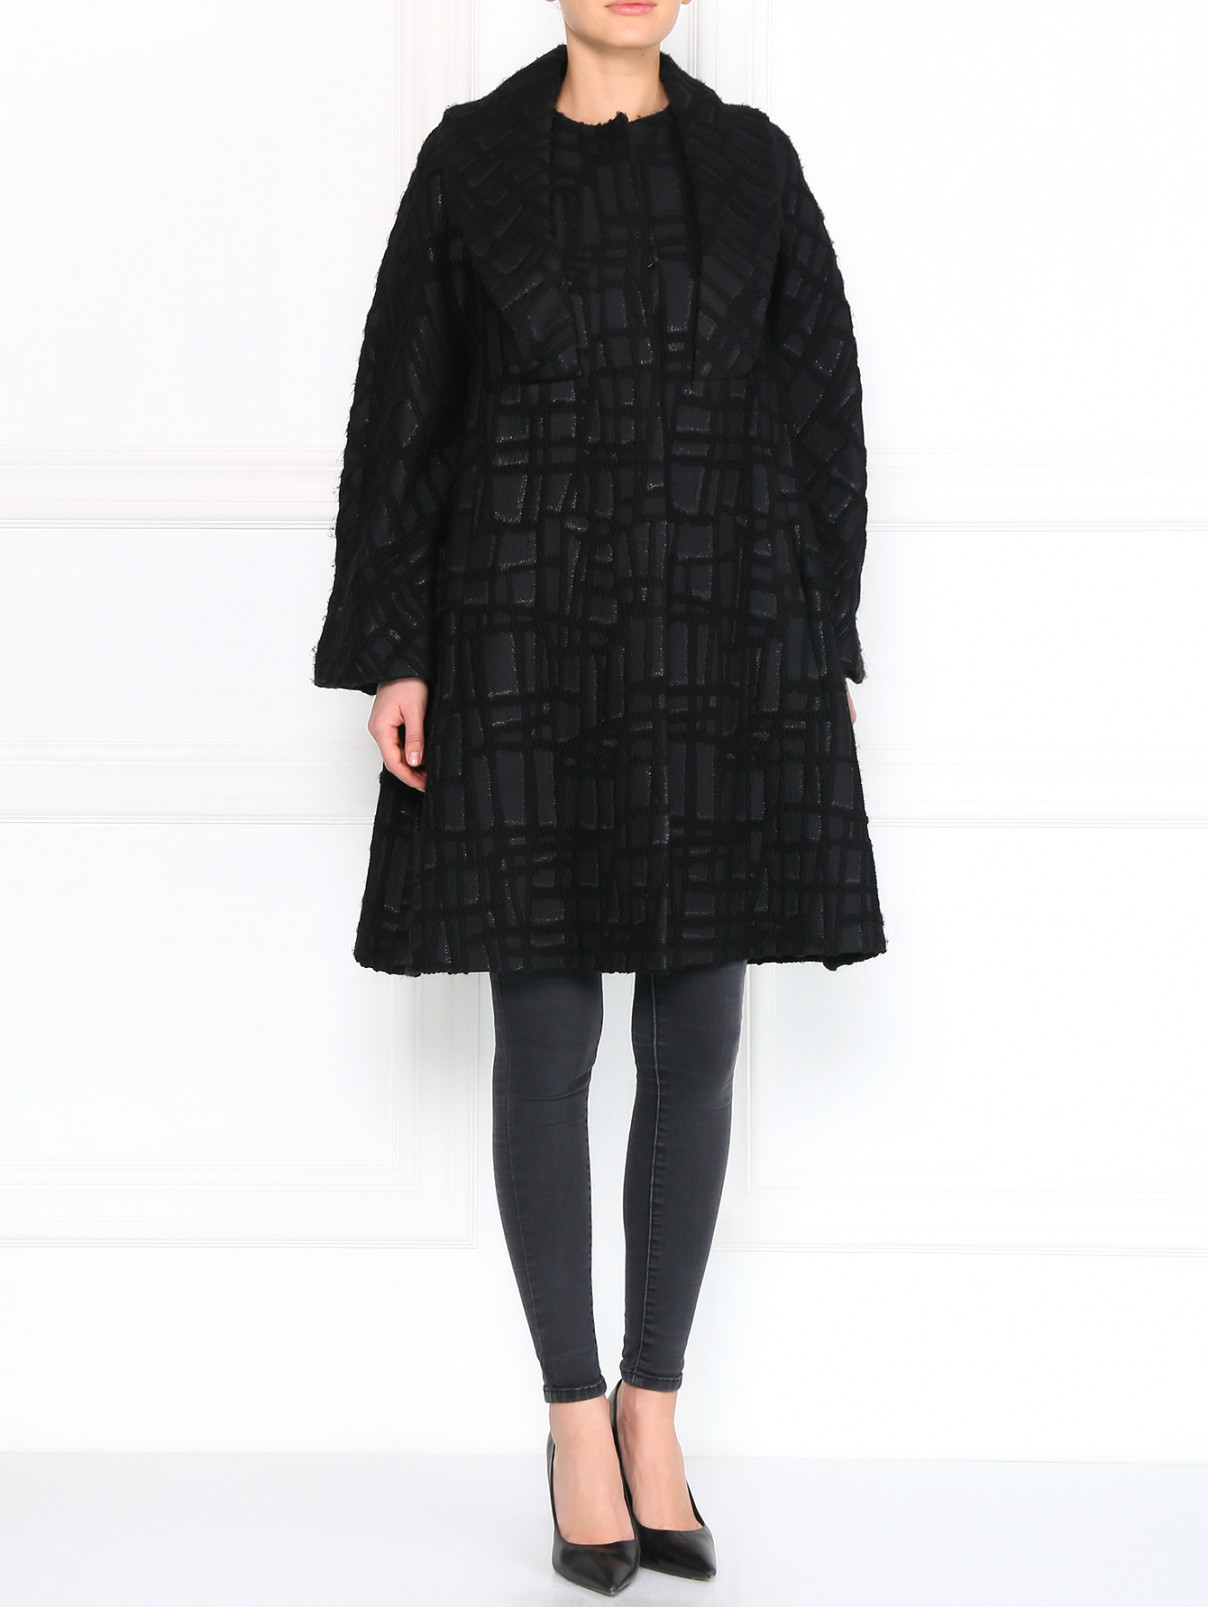 Пальто из фактурной ткани Antonio Marras  –  Модель Общий вид  – Цвет:  Черный